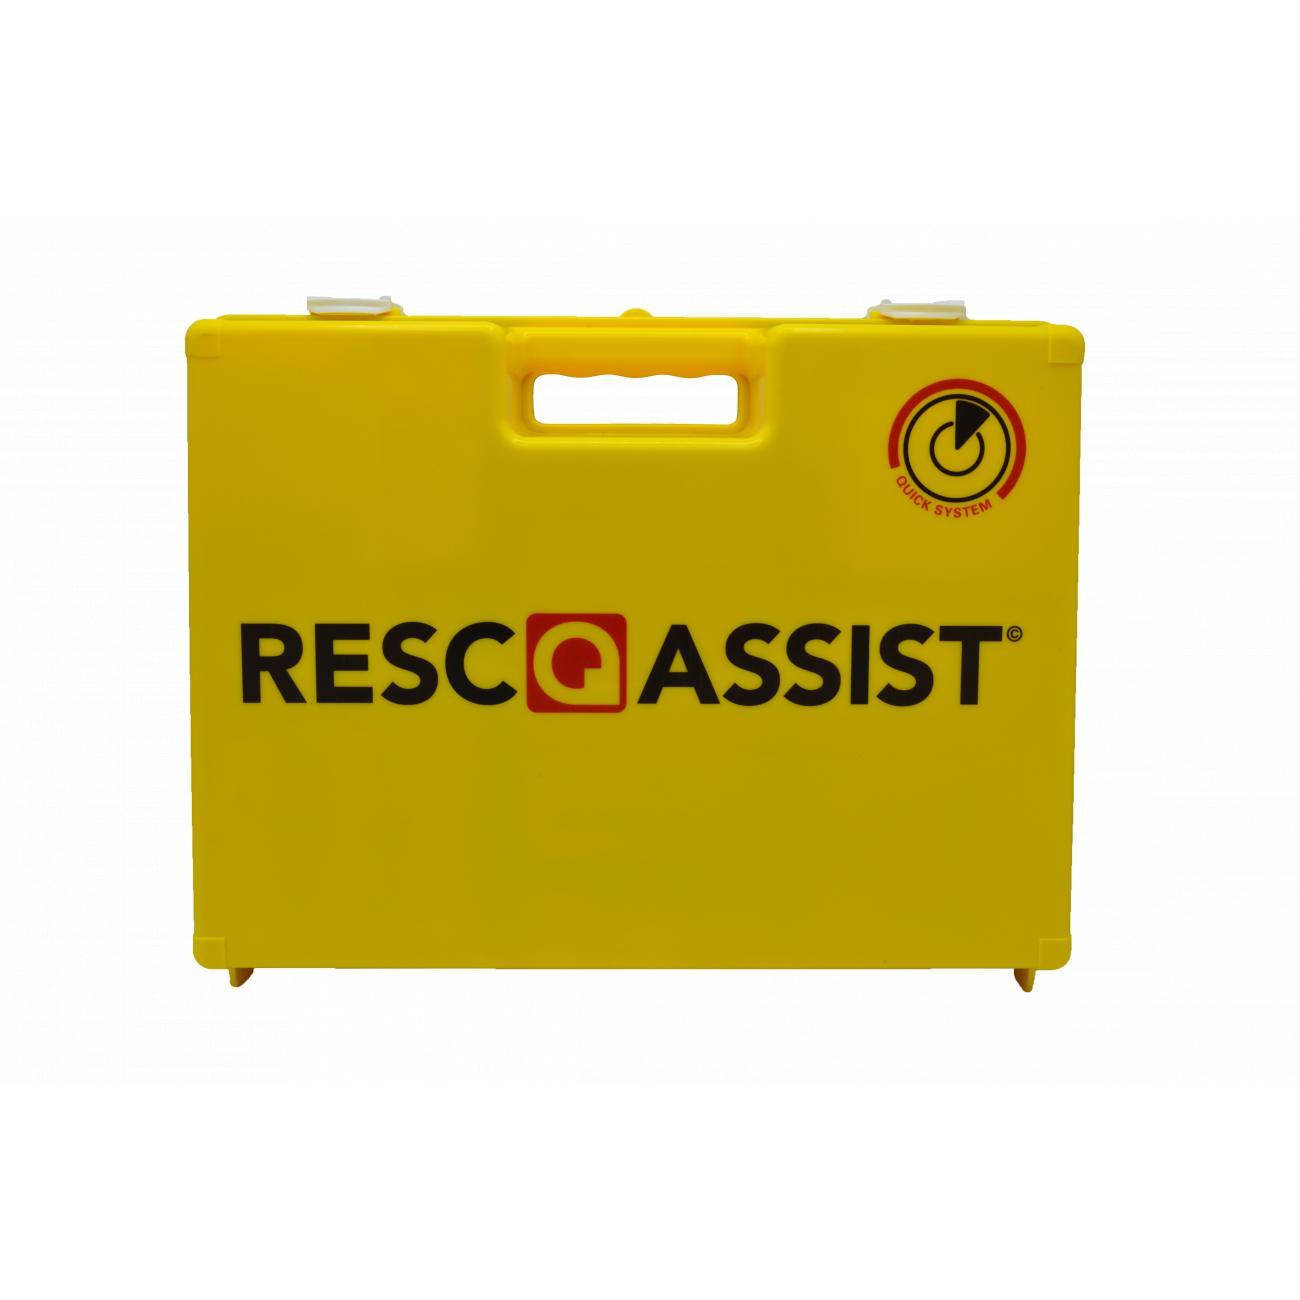 Resc-Q-Assist Kit Trousse De Secours DIN13157:2021